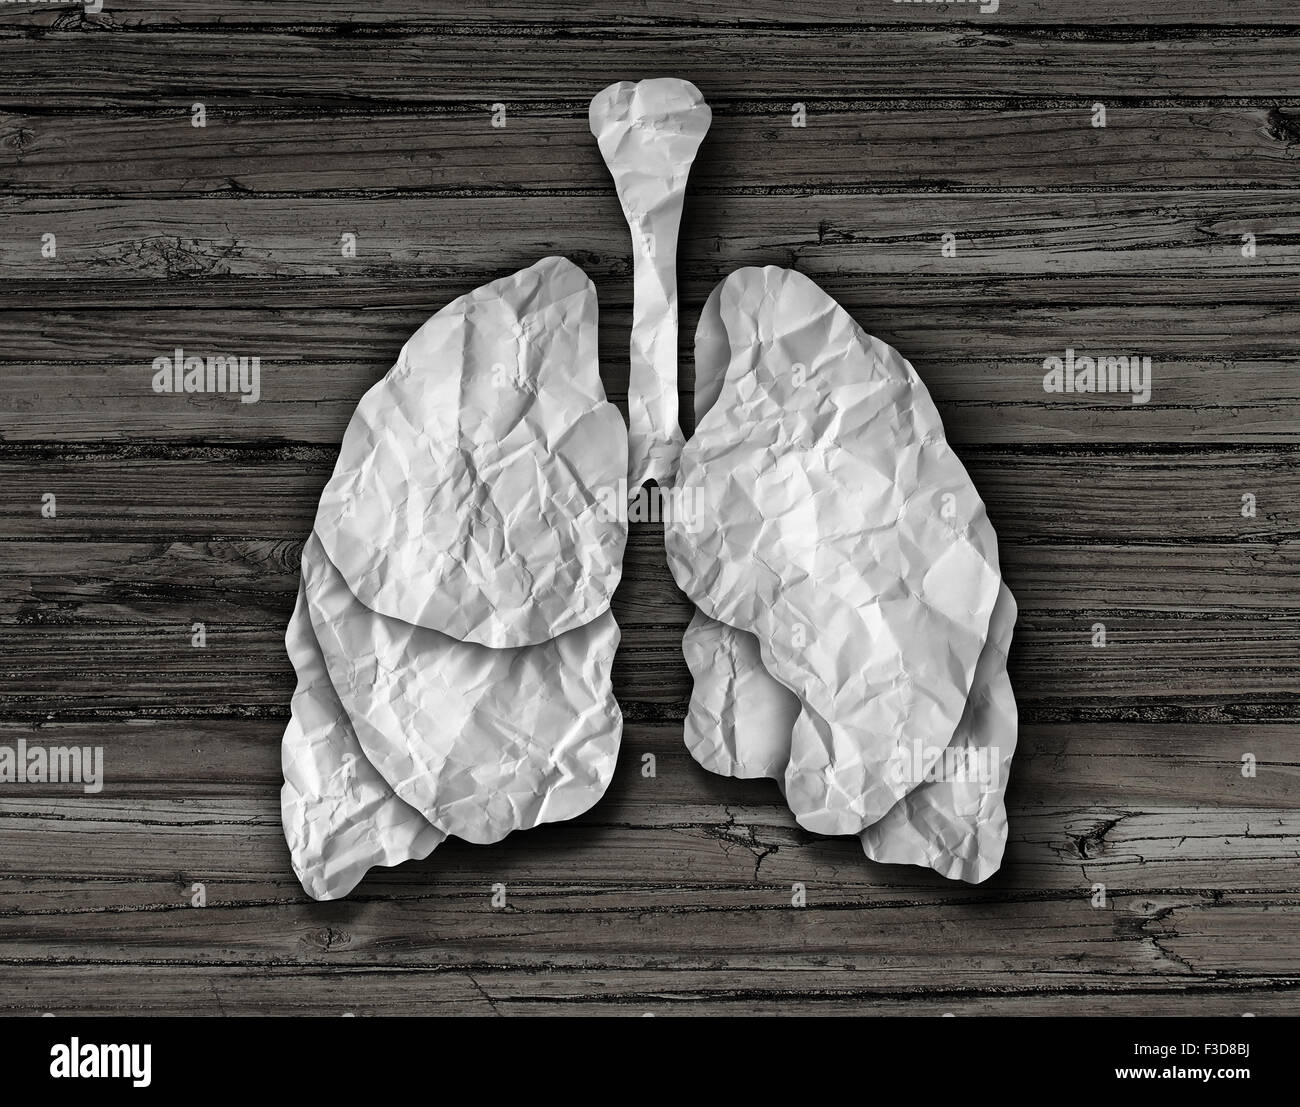 Konzept der menschlichen Lunge oder gesunde Lungen Orgel gemacht von geschnitten zerknitterten Whitepaper auf einem alten Holz Hintergrund vertritt die medizinische Anatomie der Atemwege, Sauerstoff im Körper zu bieten. Stockfoto